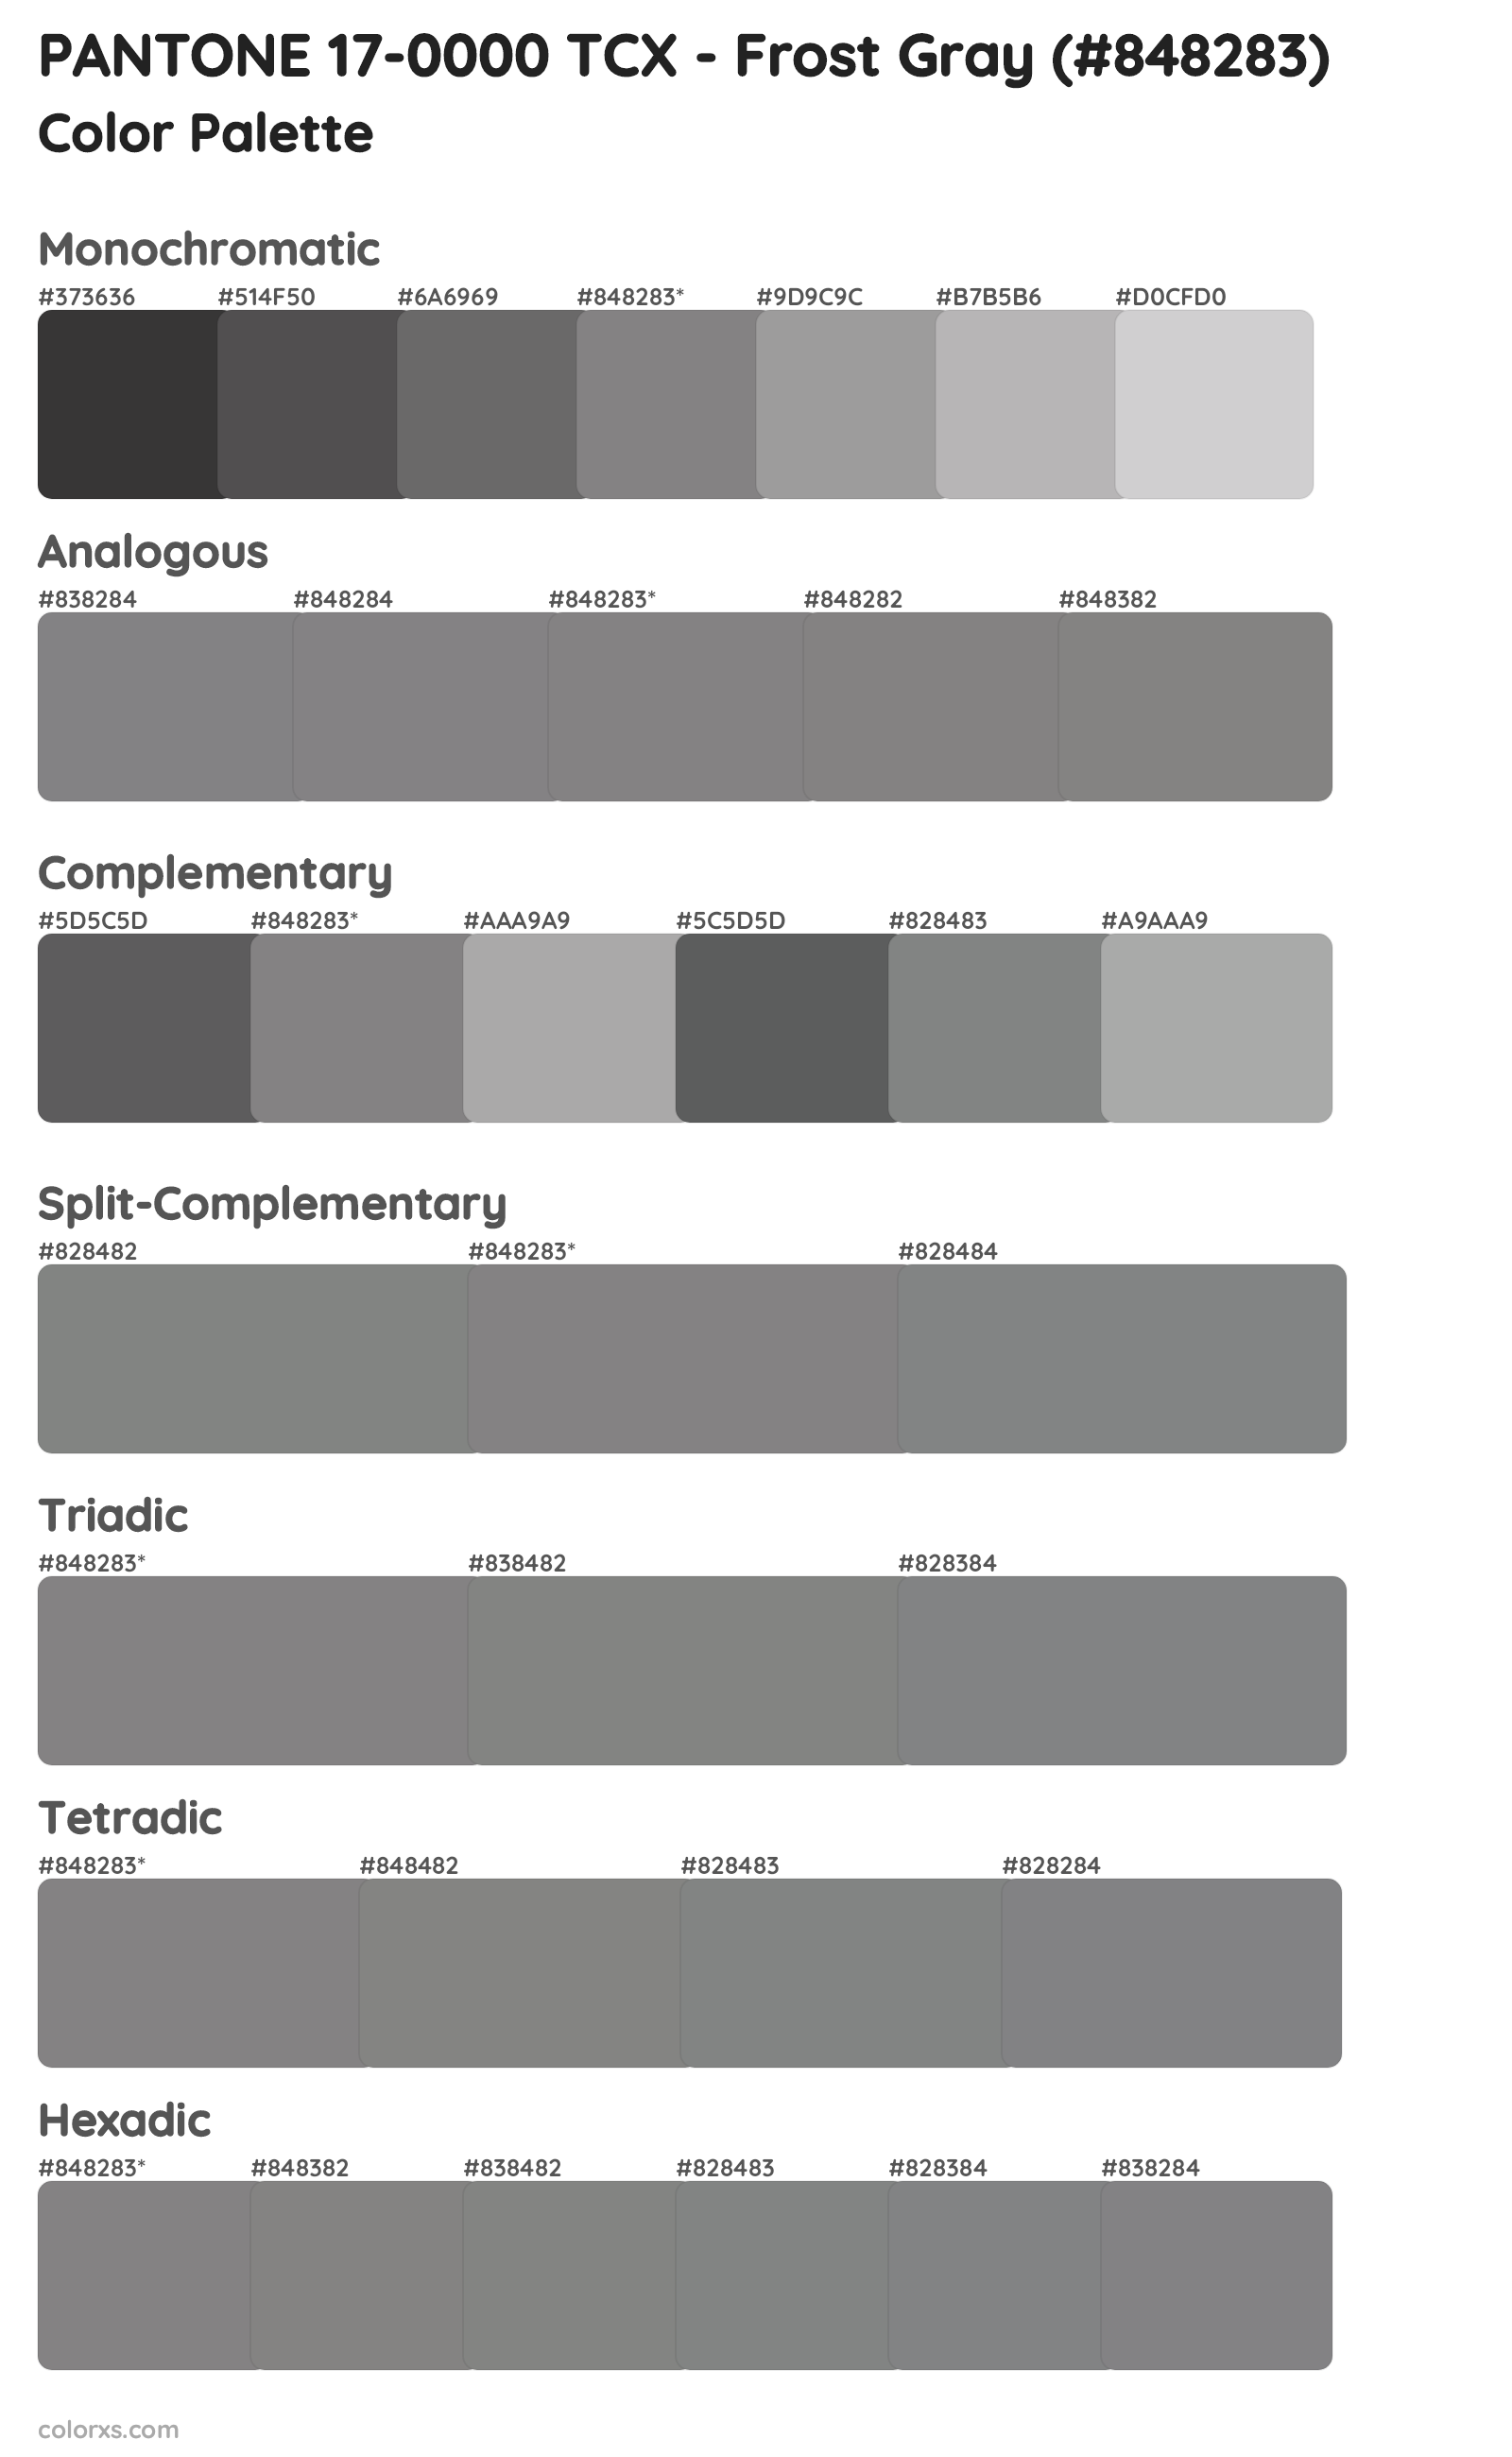 PANTONE 17-0000 TCX - Frost Gray Color Scheme Palettes